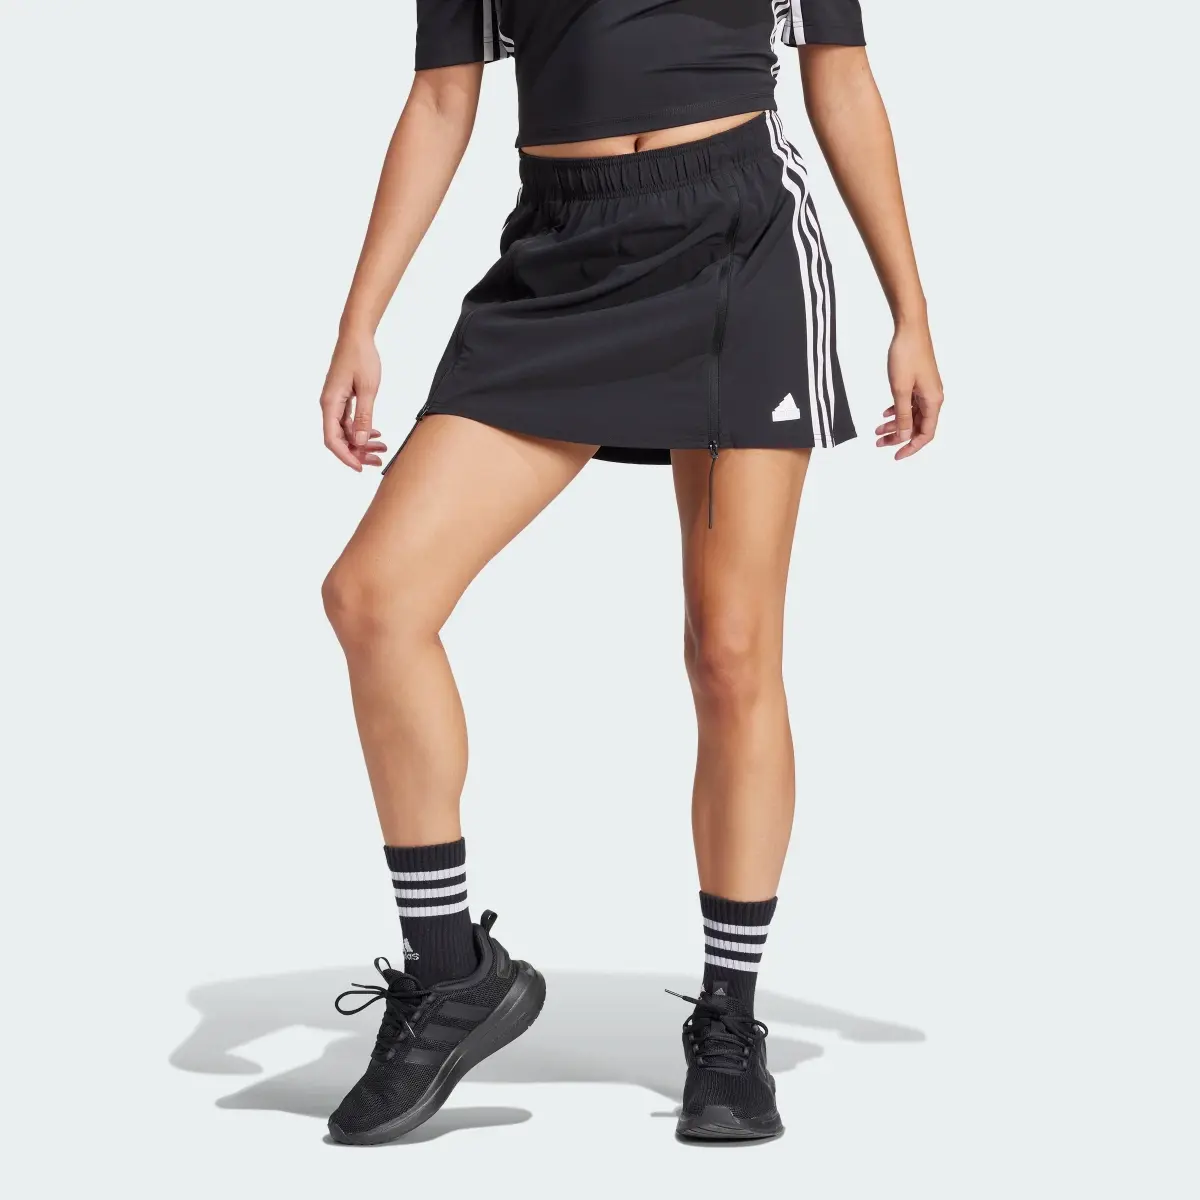 Adidas Express All-Gender Skirt. 1